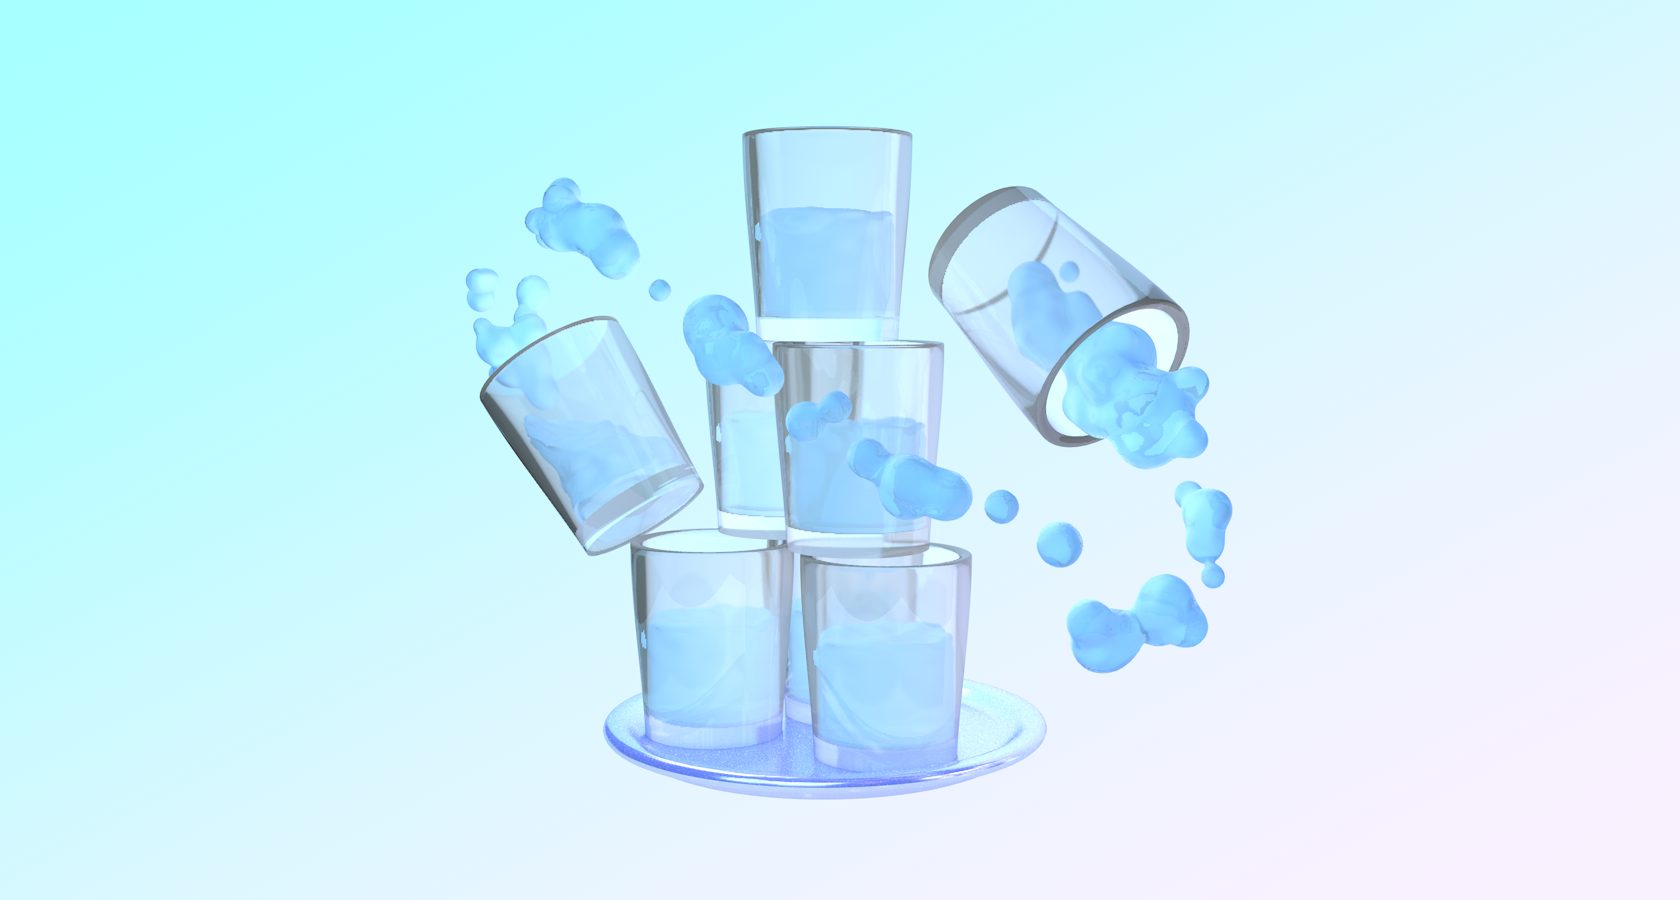 В 11 2 литра воды. 8 Стаканов воды. 2 Литра жидкости в стаканах. Полтора литра воды. 8 Стаканов воды в день бланк.